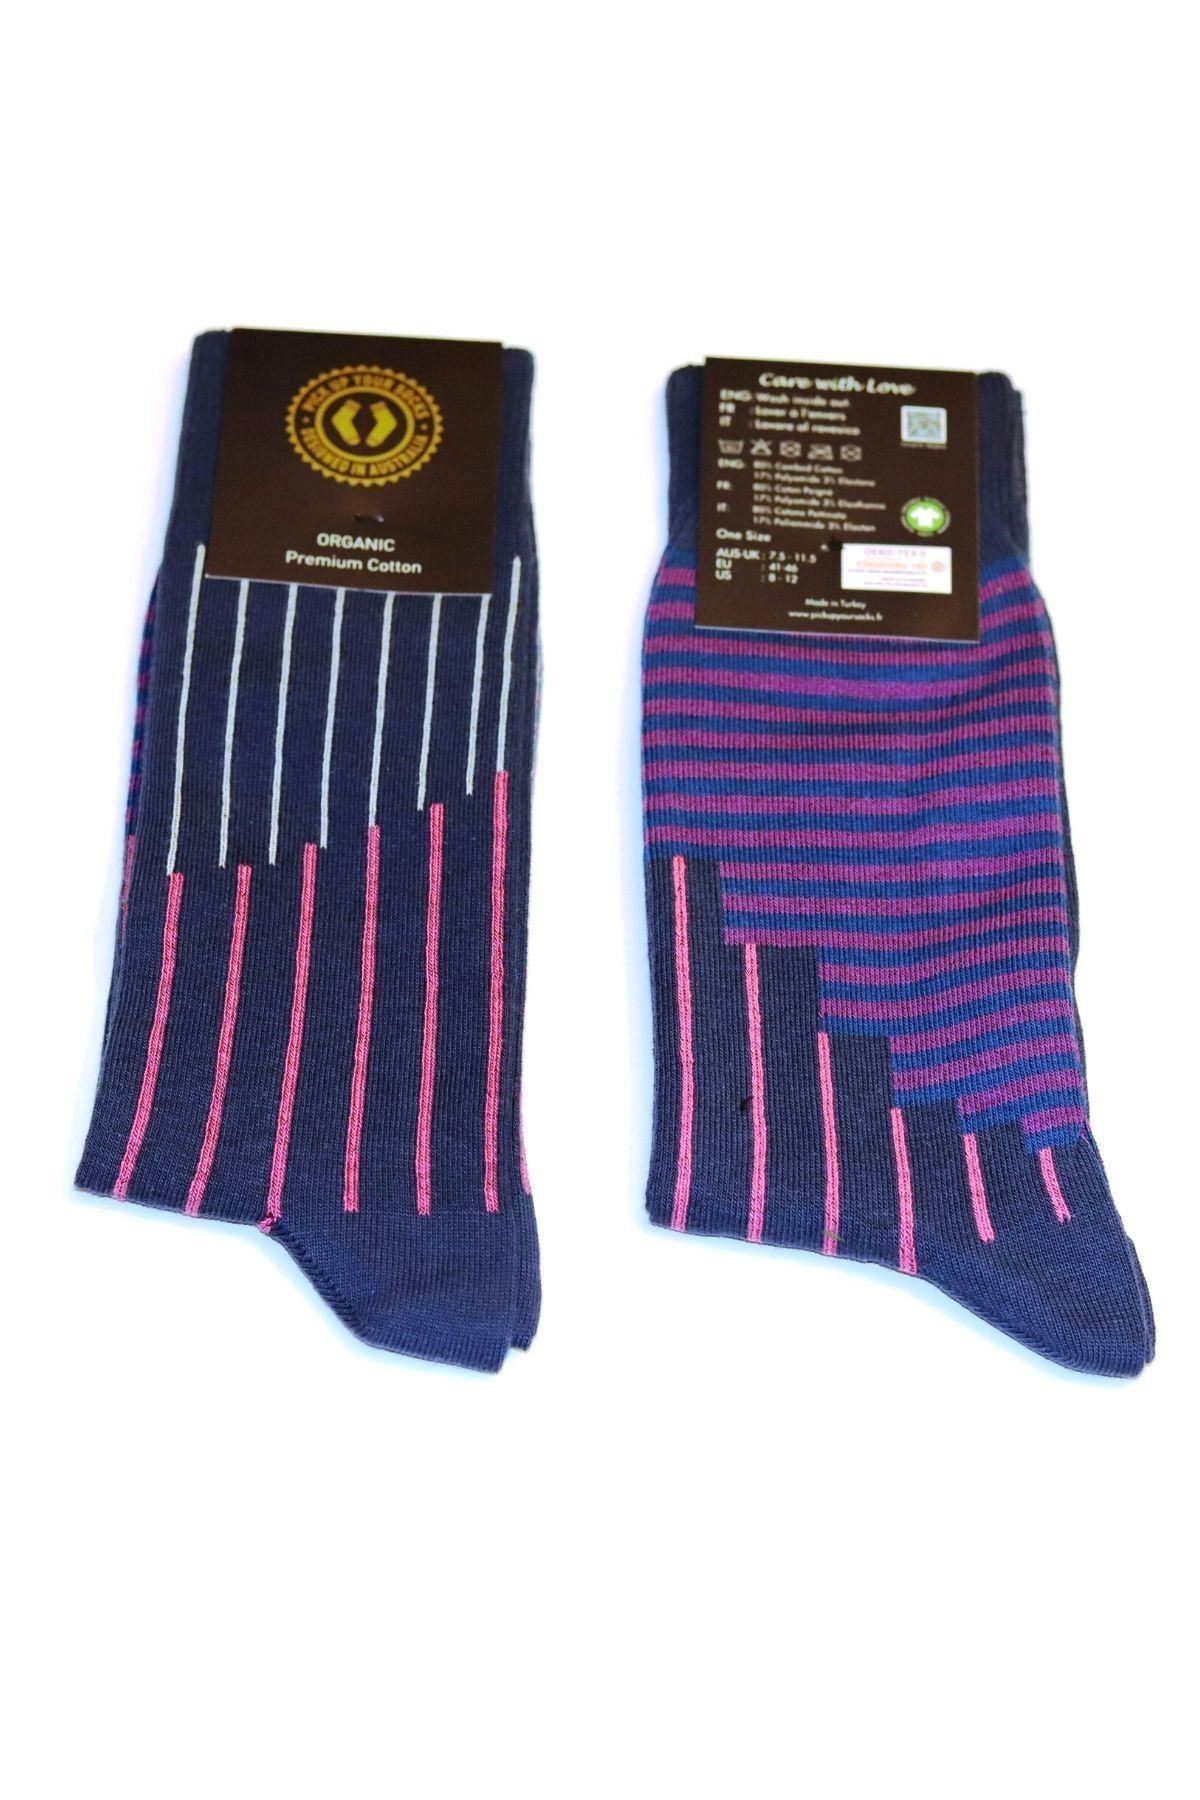 Pick Up Your Socks Organic Premium Cotton Özel Tasarım Erkek Çorap. 41-46